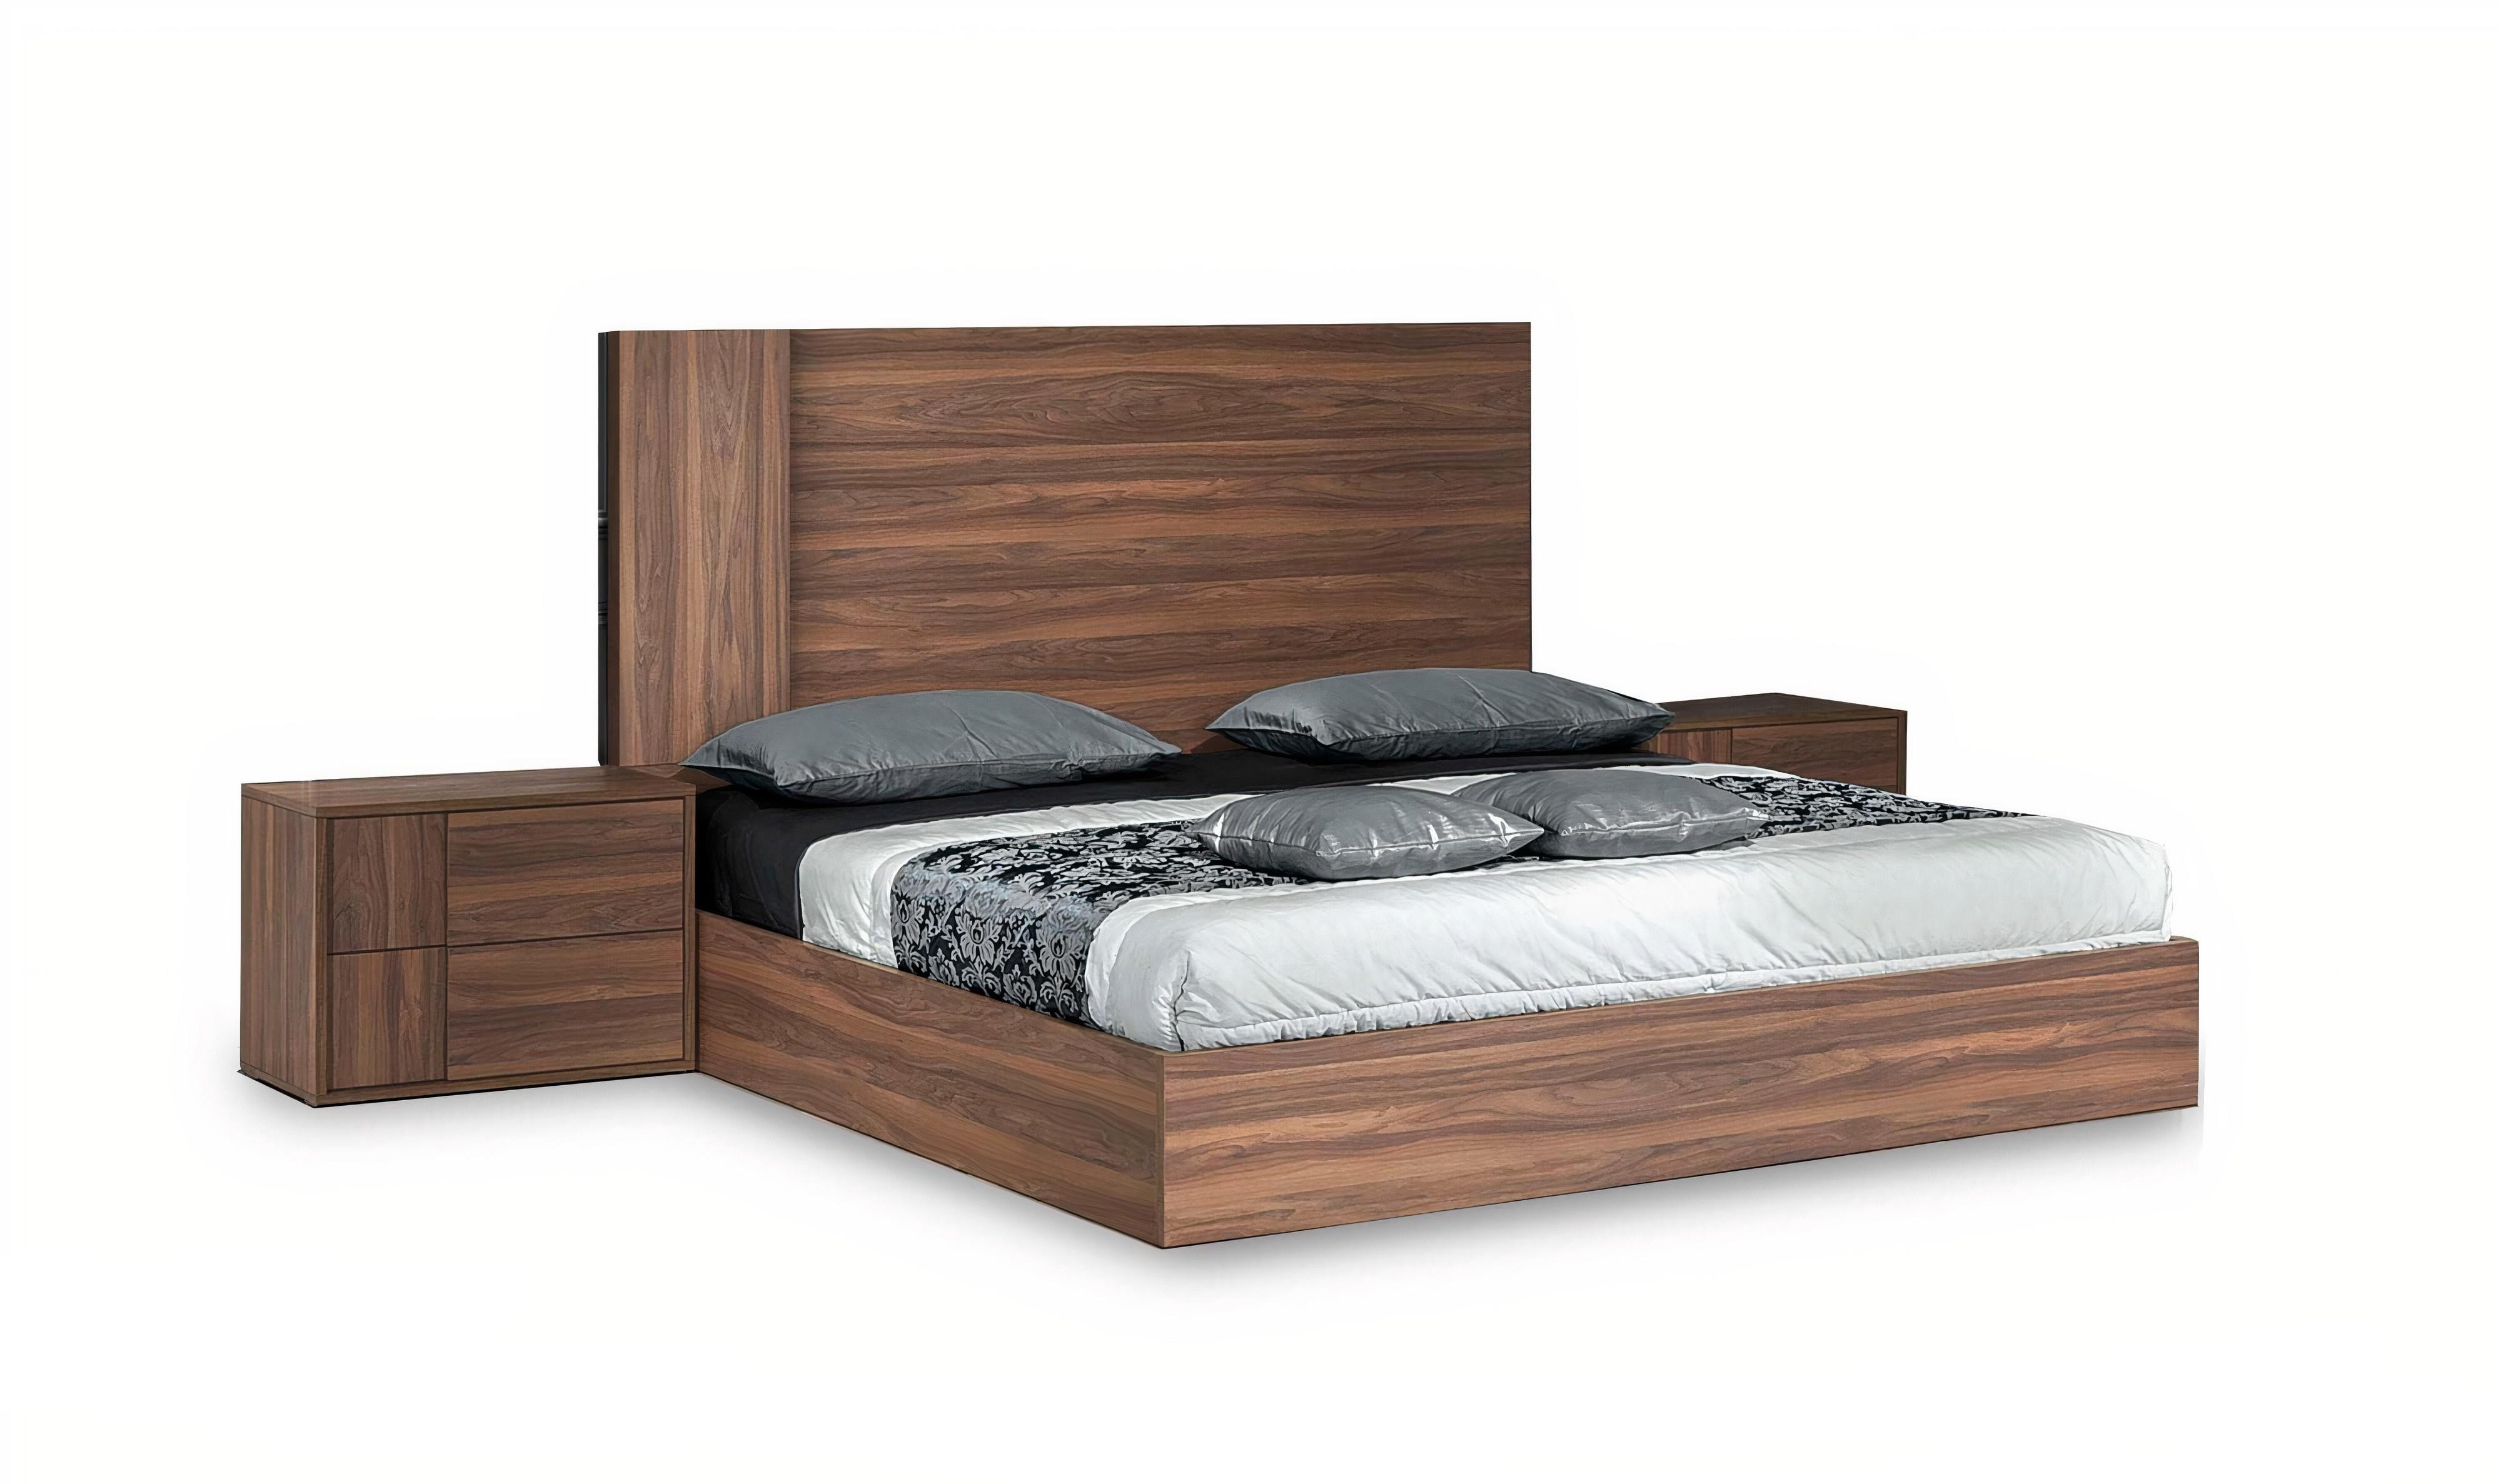 

    
Walnut Queen Size Panel Bedroom Set 3Pcs by VIG Nova Domus Asus
